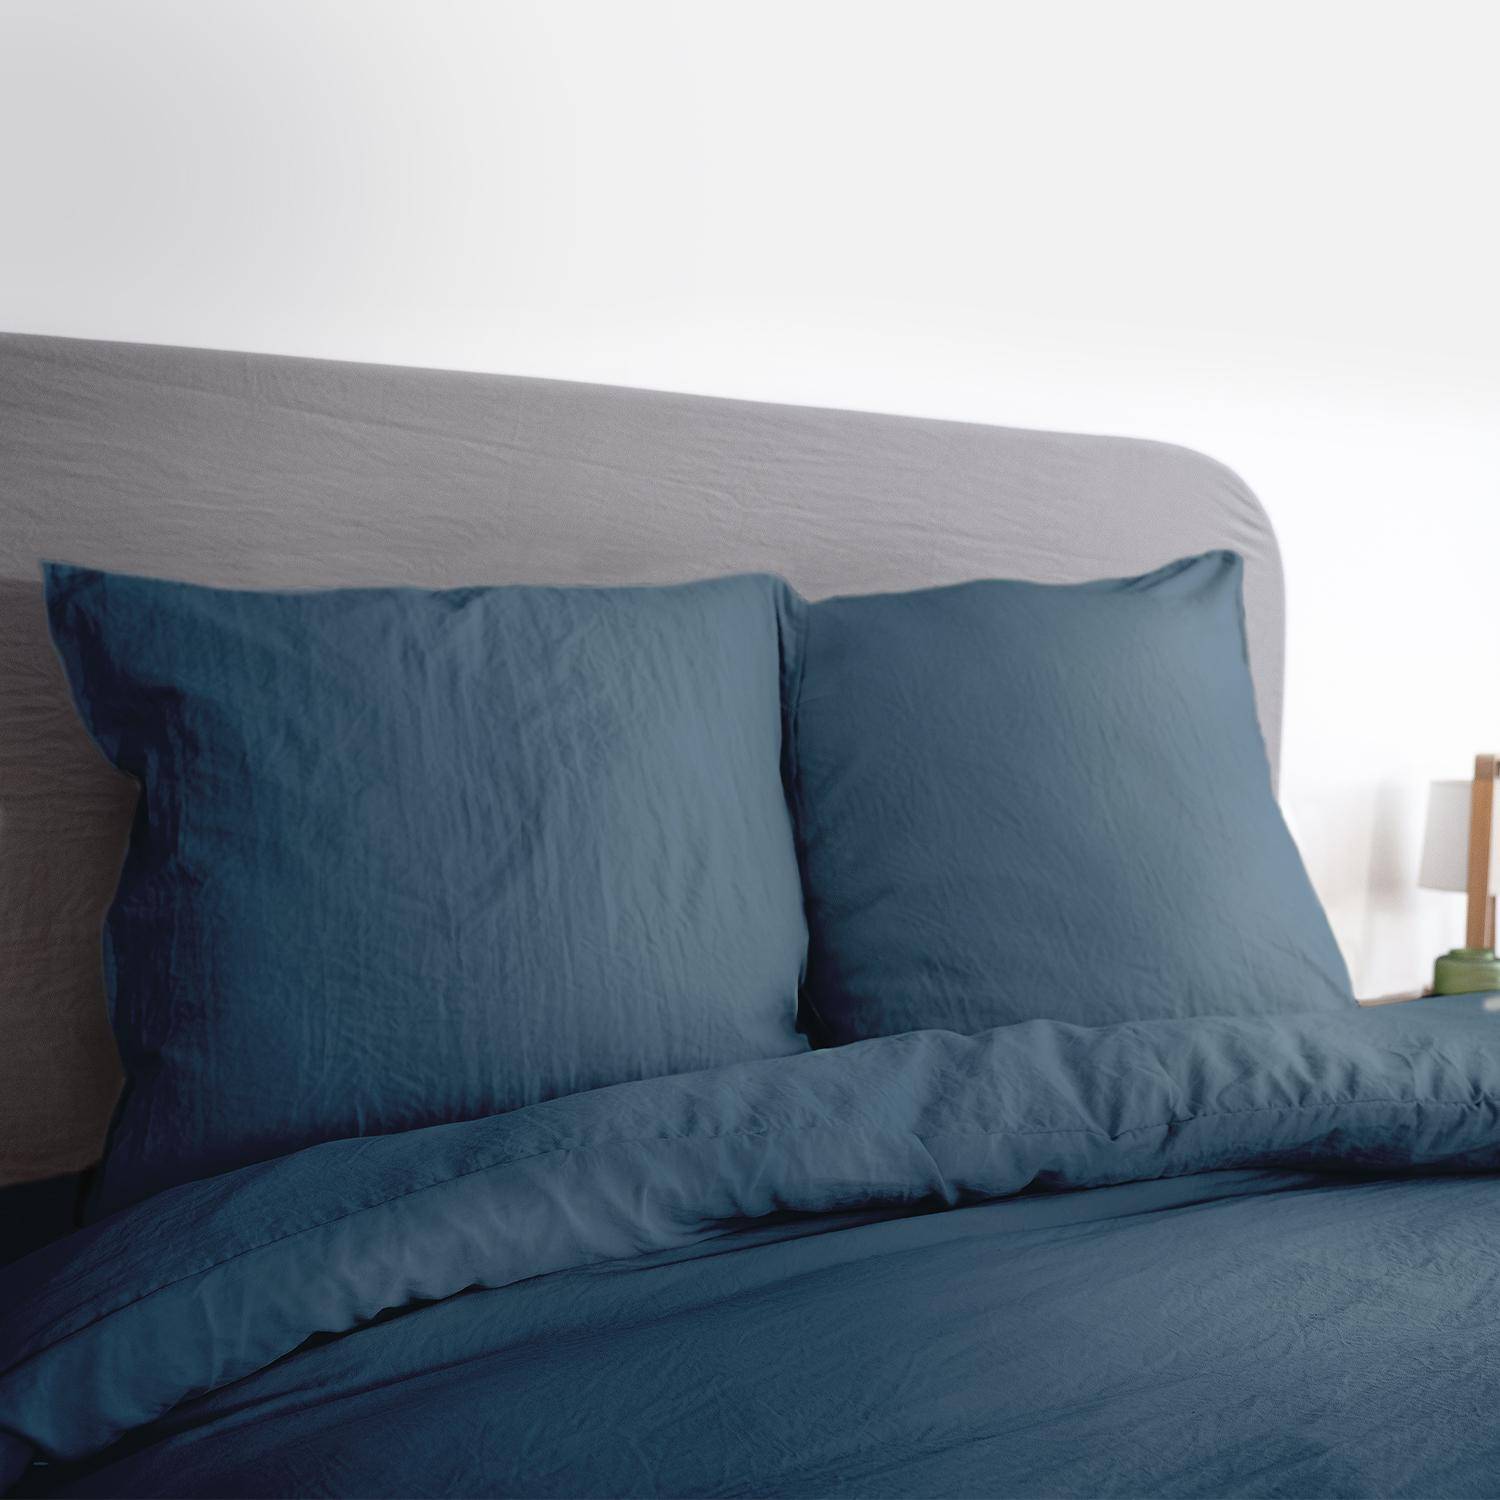 Bettwäsche-Set aus vorgewaschener Mikrofaser in nachtblau 260 x 240 cm für Doppelbetten, 1 Bettbezug und 2 Kissenbezüge,sweeek,Photo2